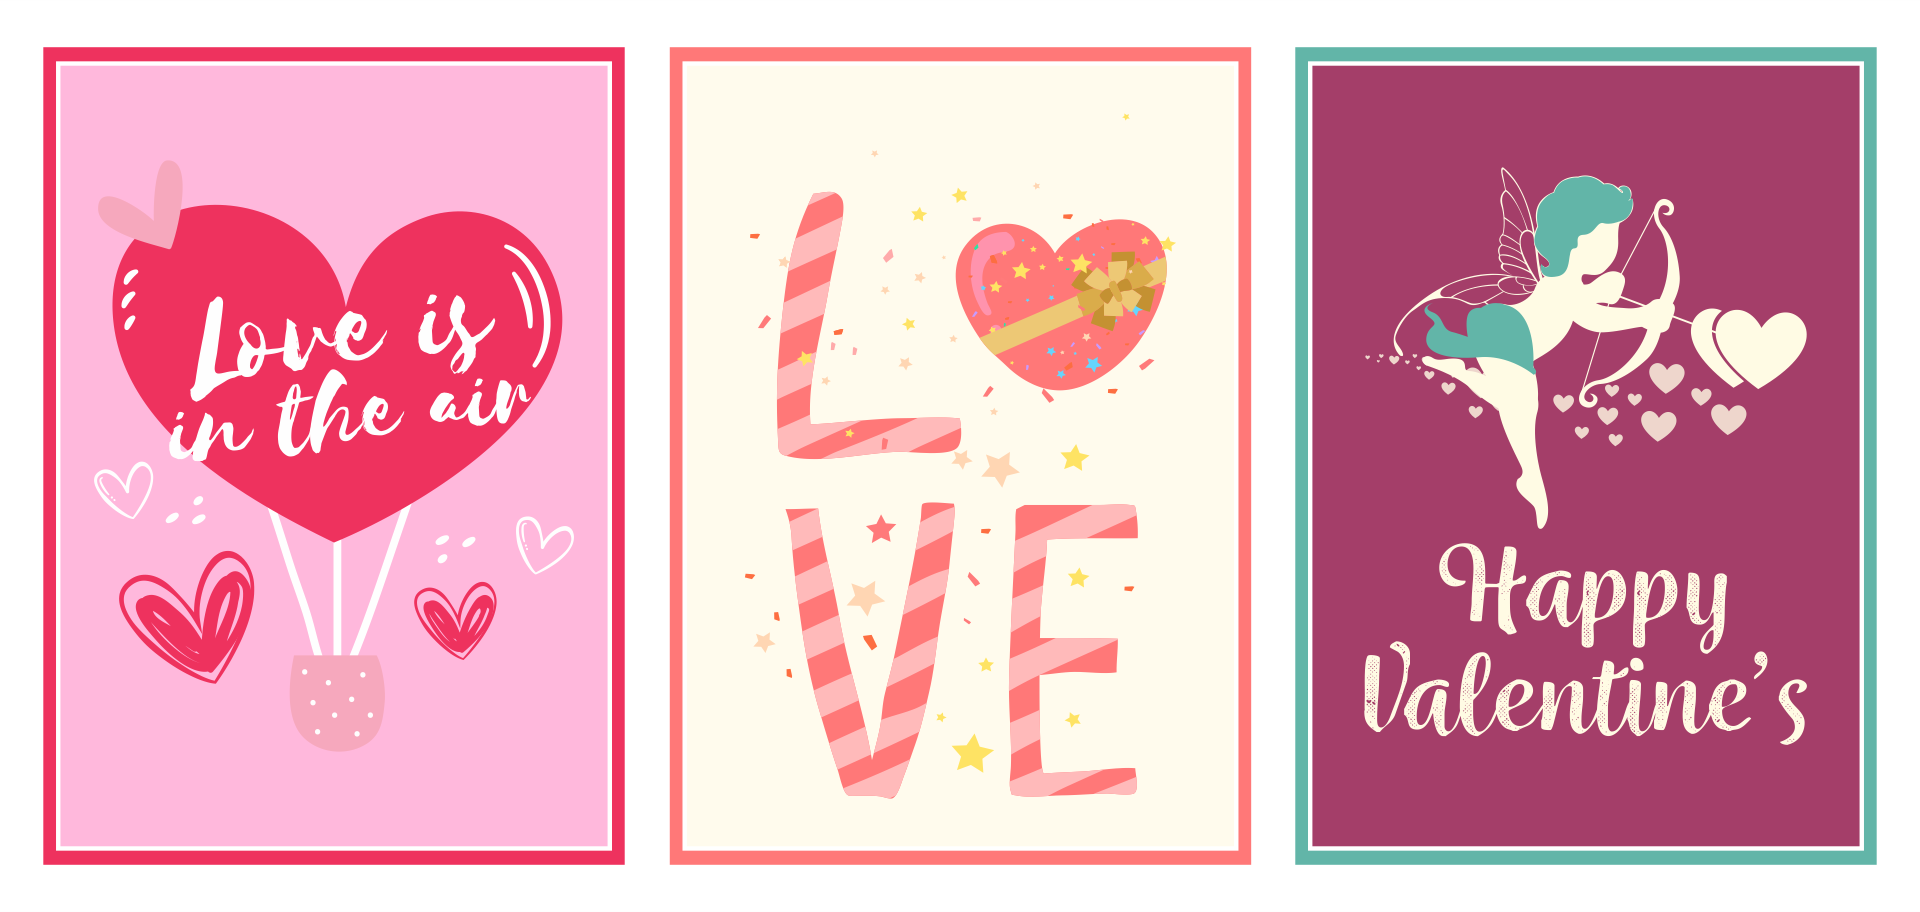 9 Best My Valentine Free Printable Cards Printablee Com